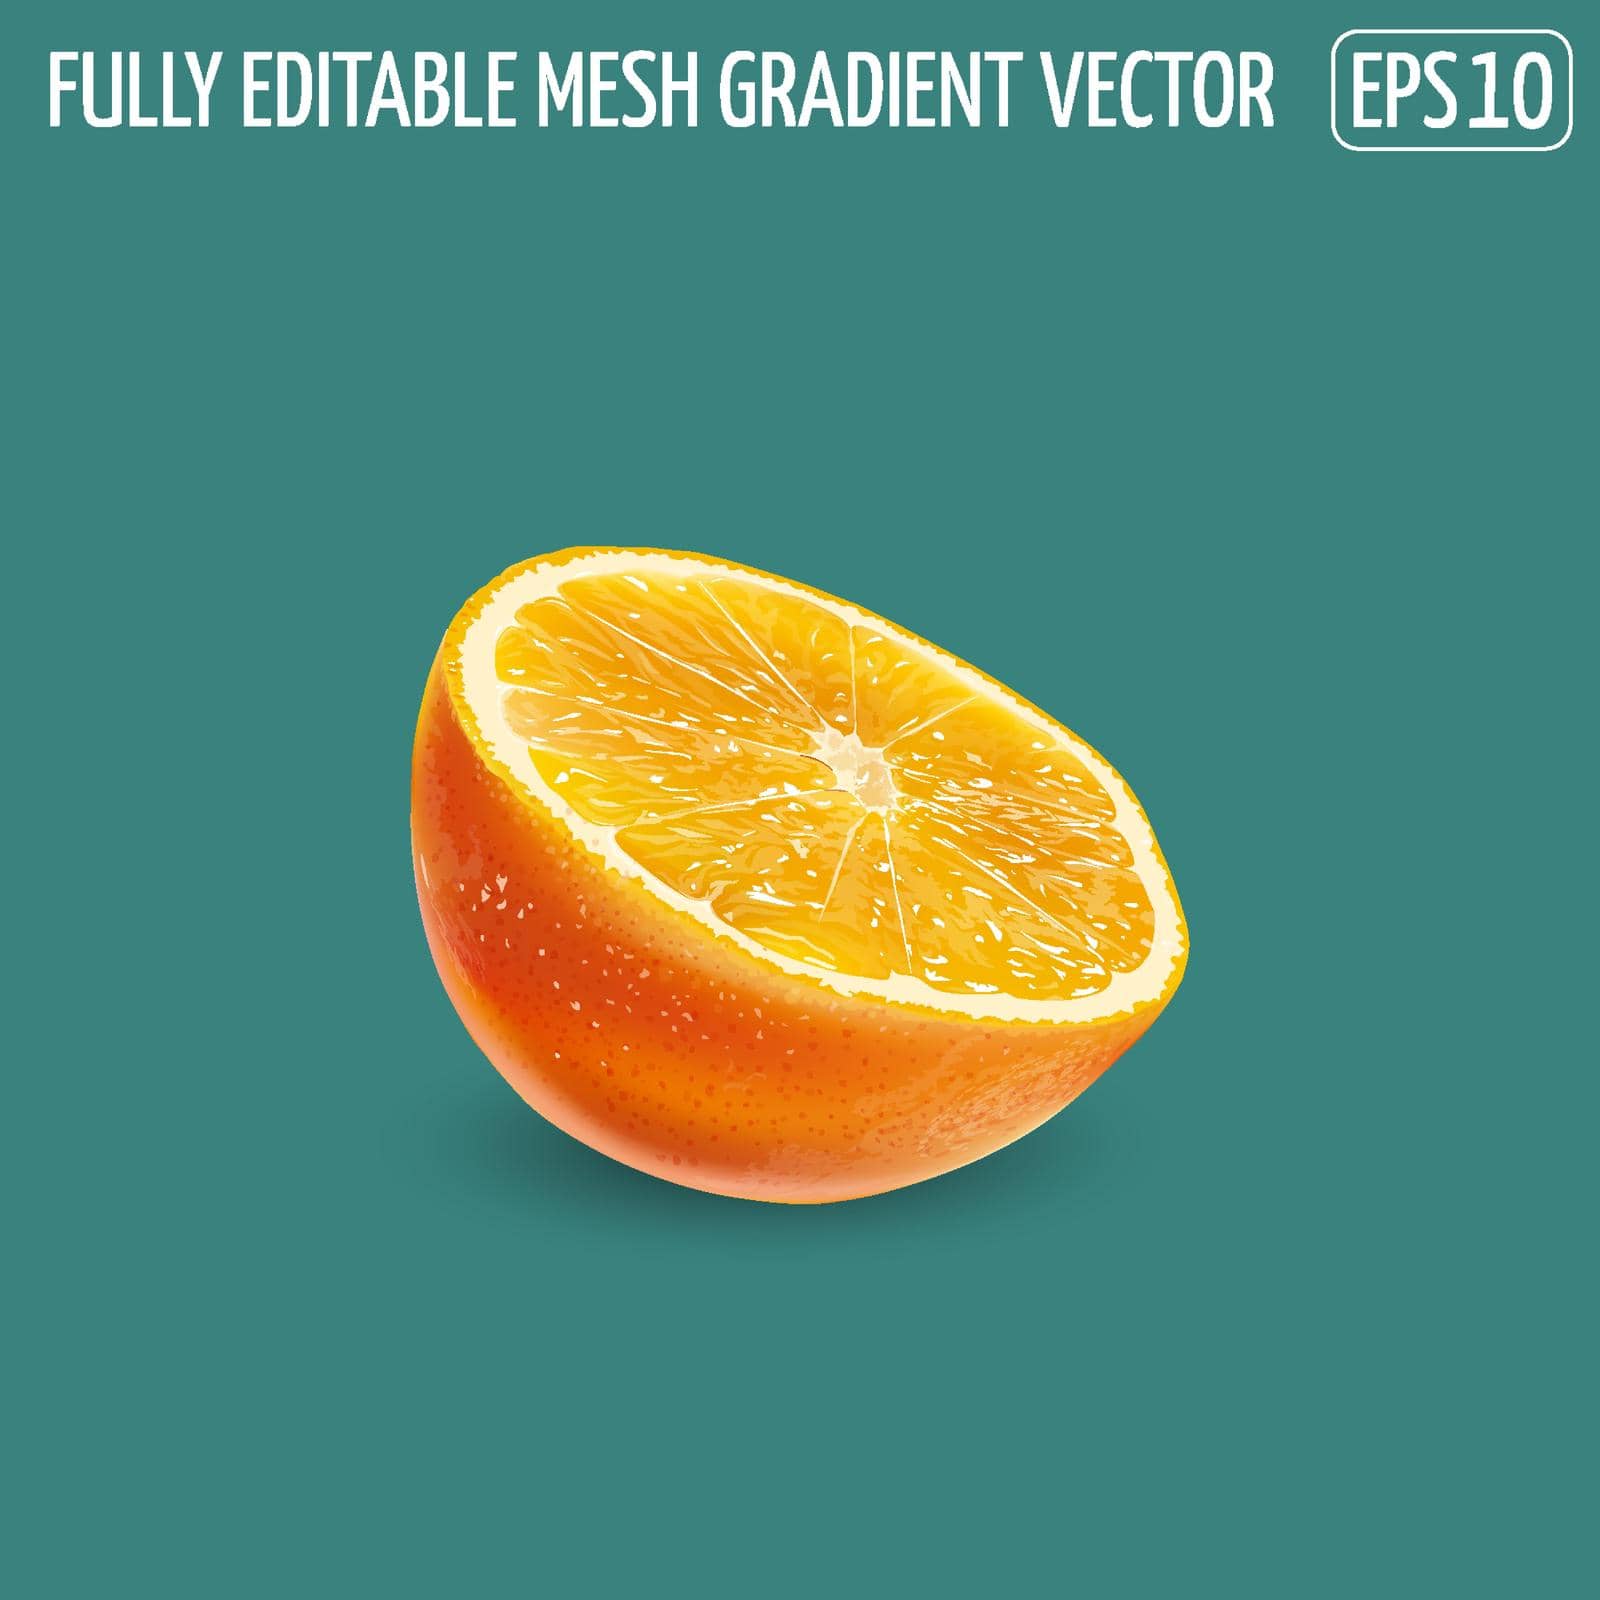 Fresh juicy orange - healthy food design. Realistic vector illustration.